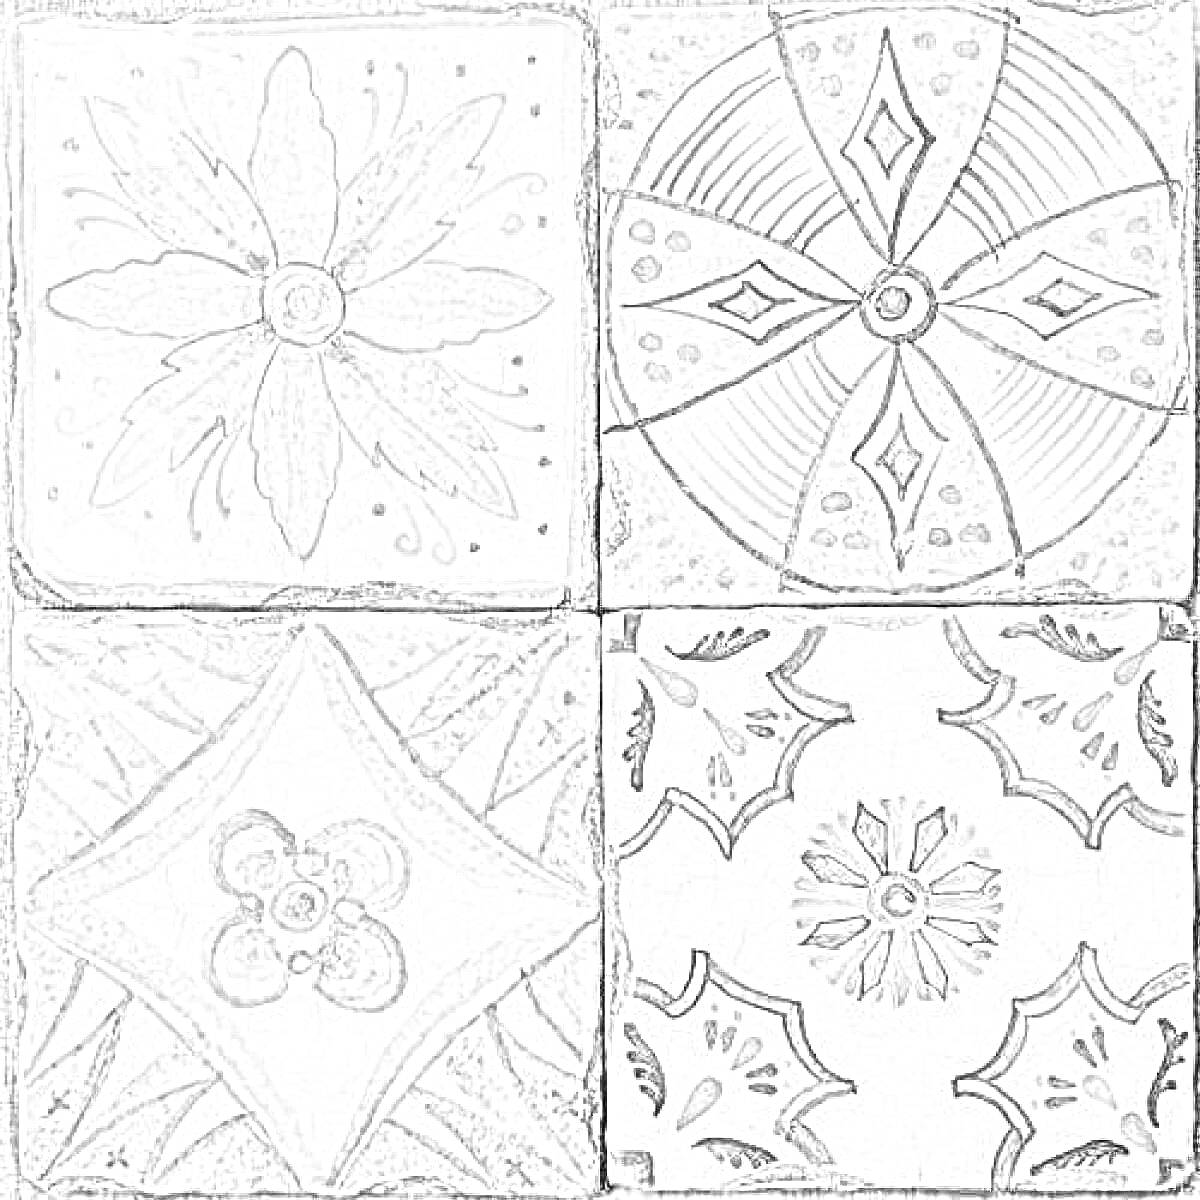 Керамическая плитка с рисунком цветка, геометрическим узором, симметричными фигурами и абстрактным мотивом